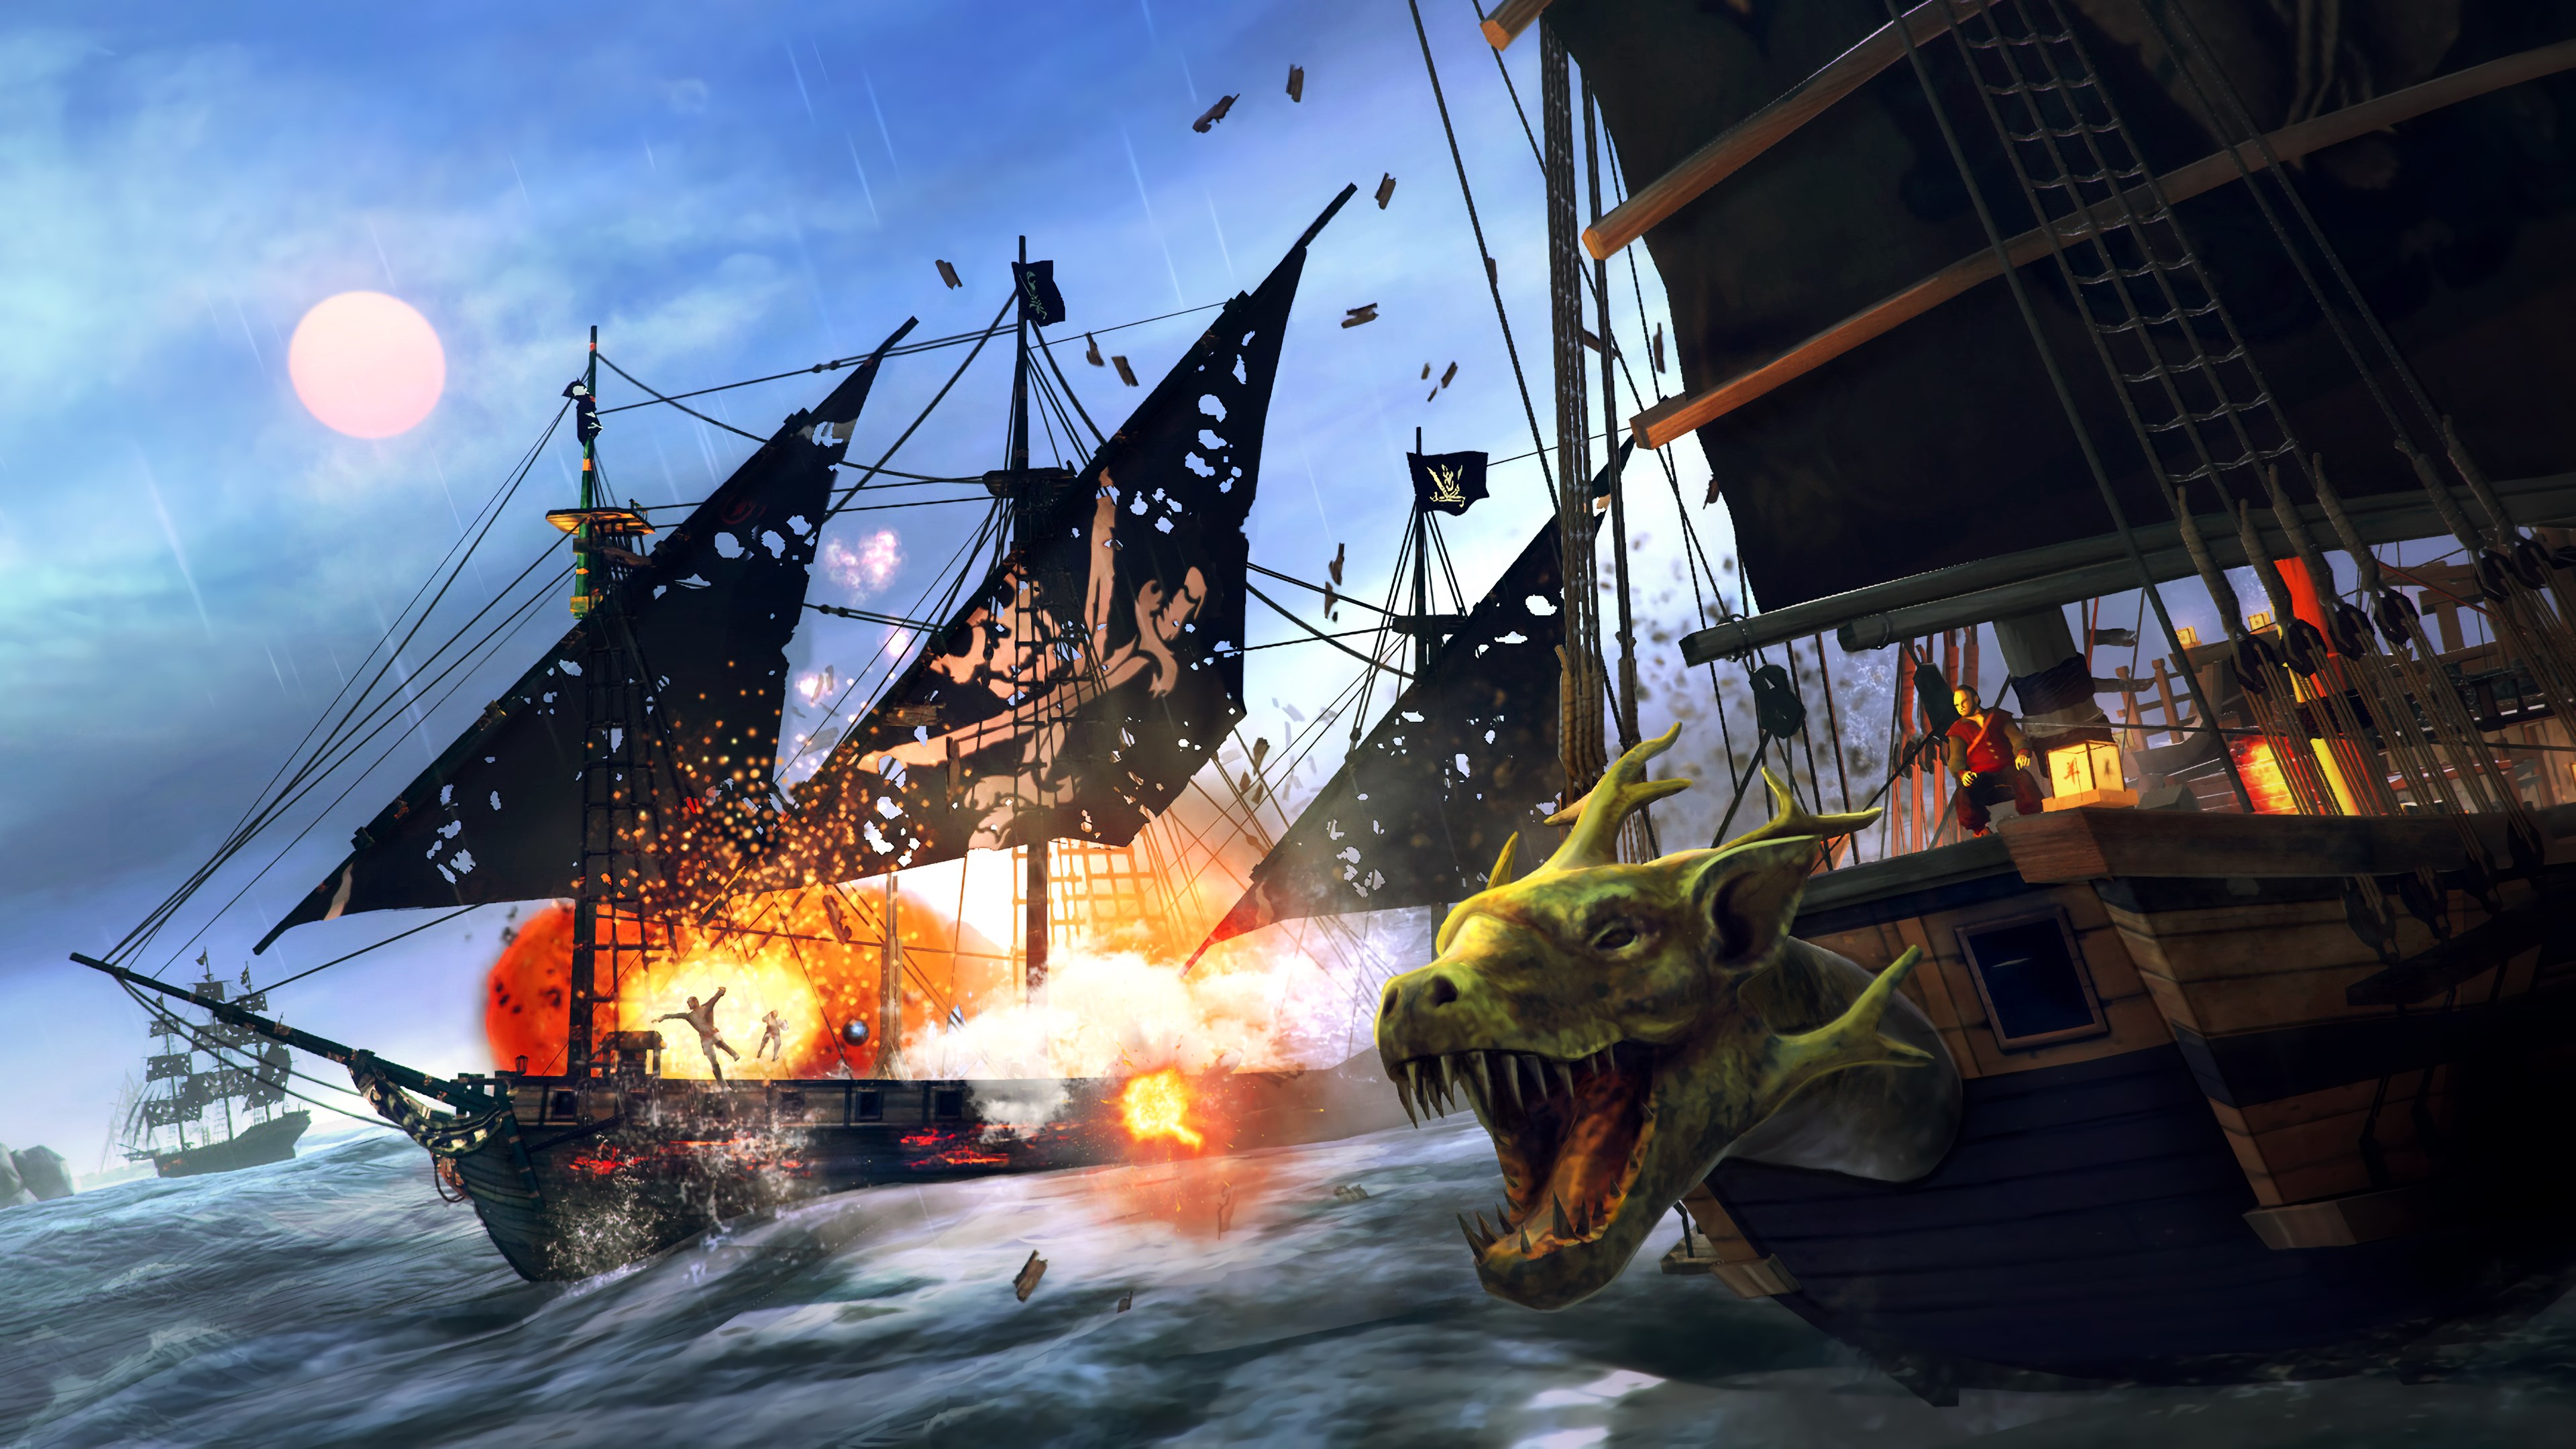 Игра пираты с открытым миром. Tempest: Pirate Action RPG. Under the Jolly Roger игра. Пиратский корабль. Игра про корабли и пиратов.